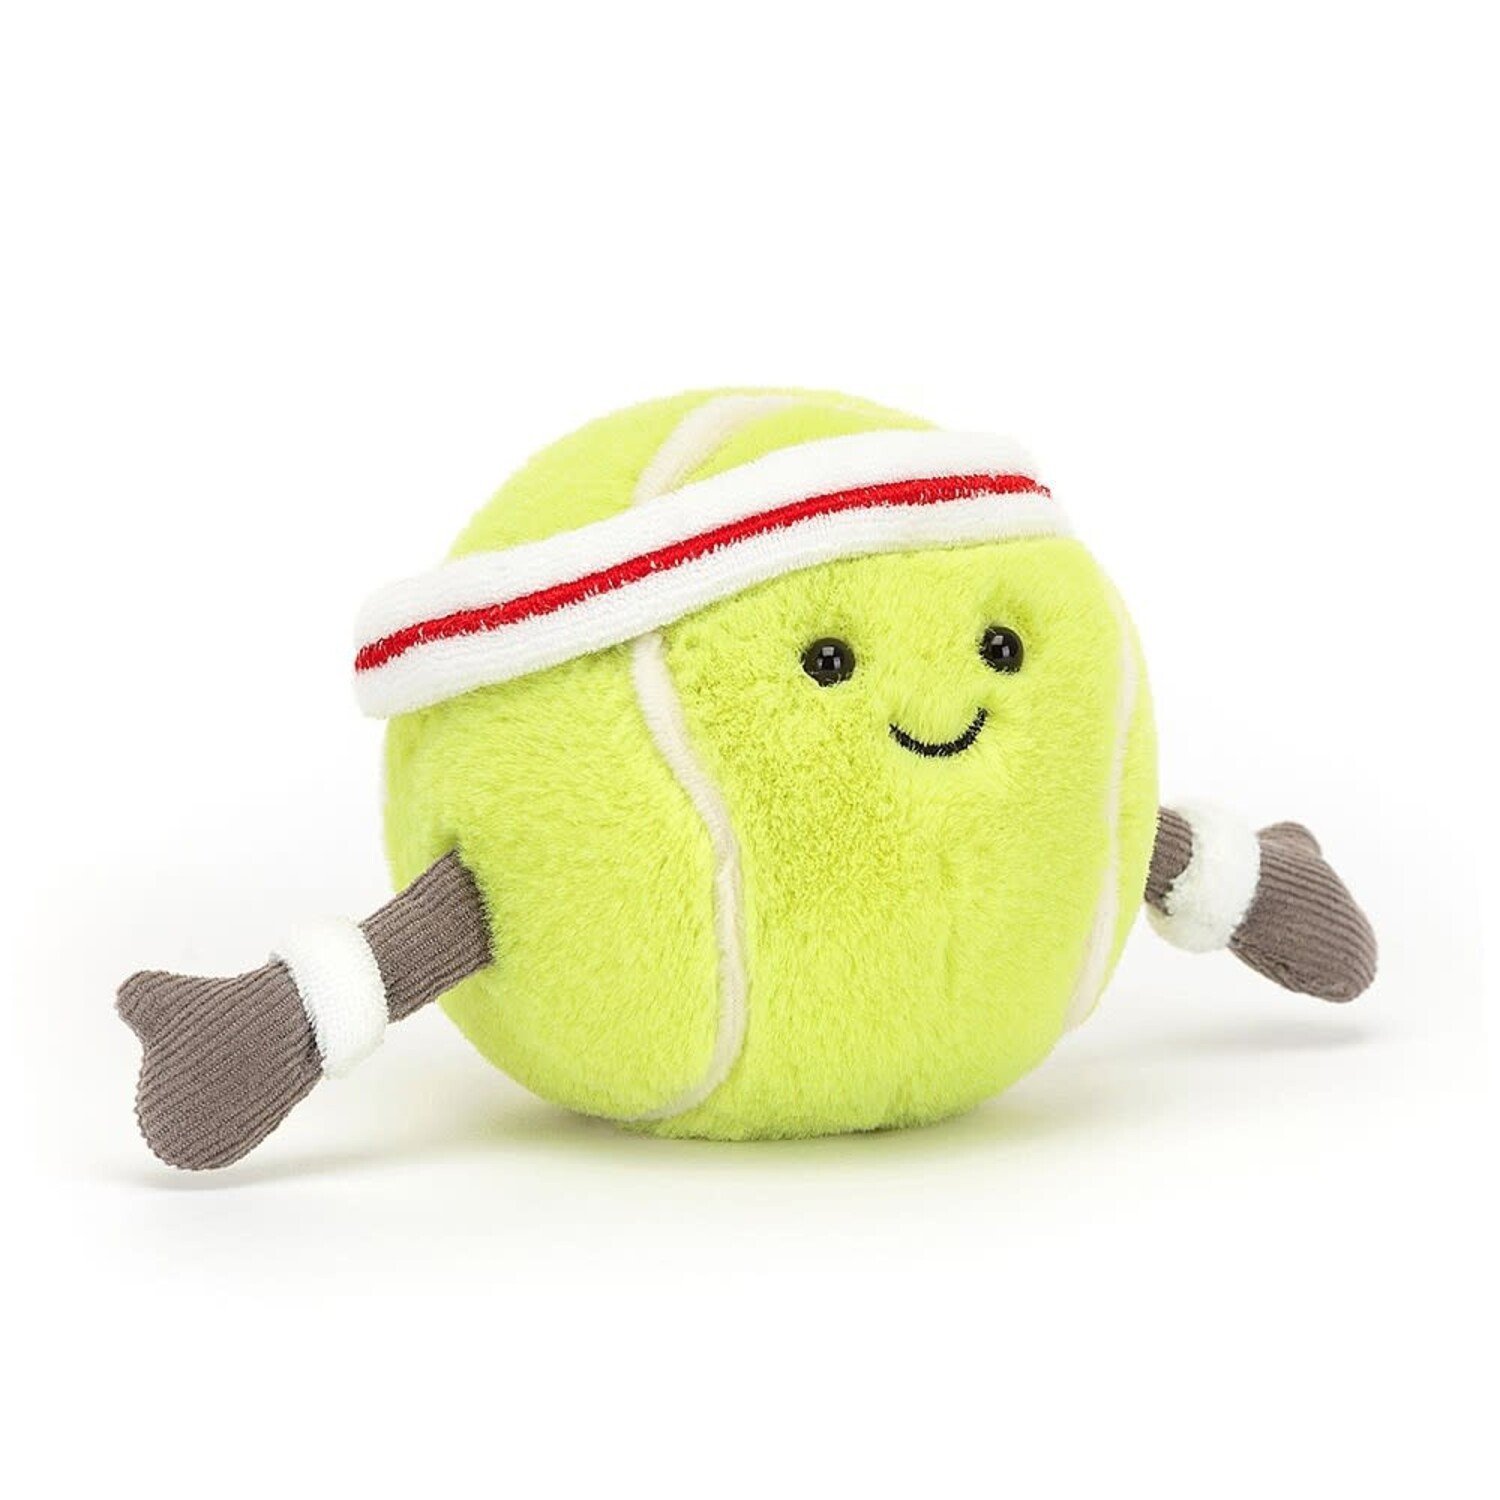 https://cdn.shoplightspeed.com/shops/653480/files/55097318/1500x4000x3/jellycat-amuseable-tennis-ball.jpg